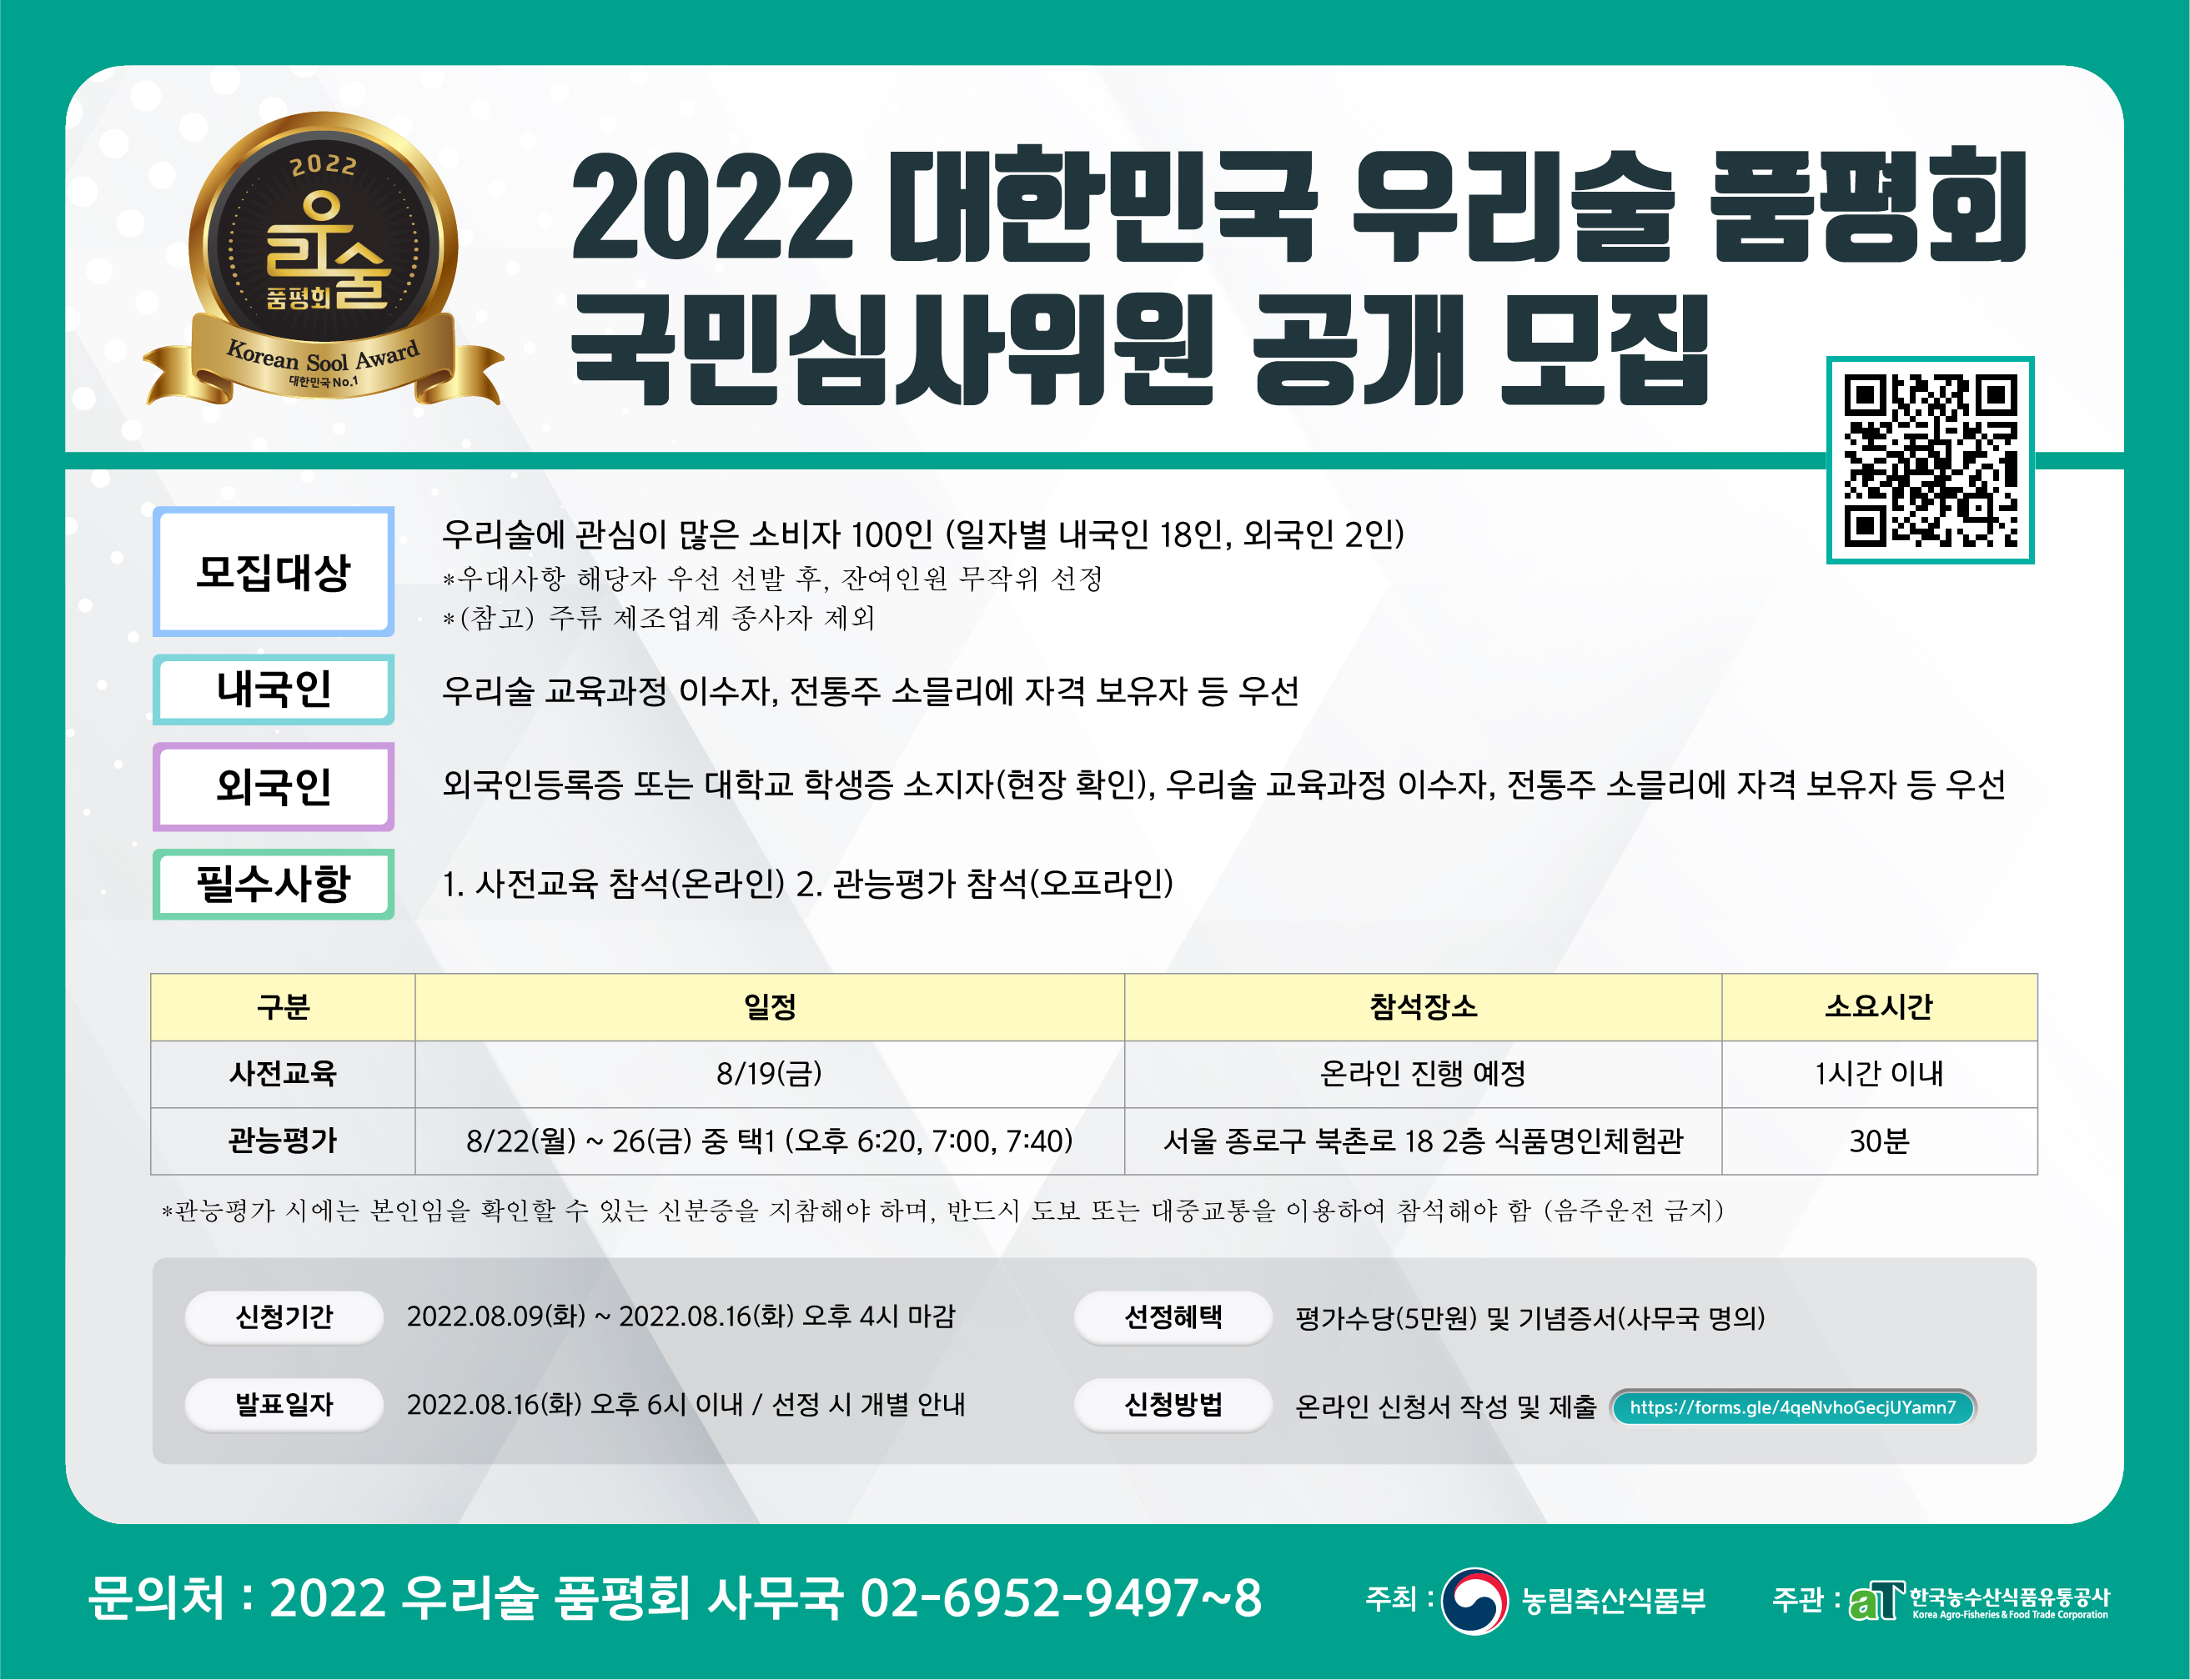 2022 품평회 국민심사위원 모집 포스터.jpg